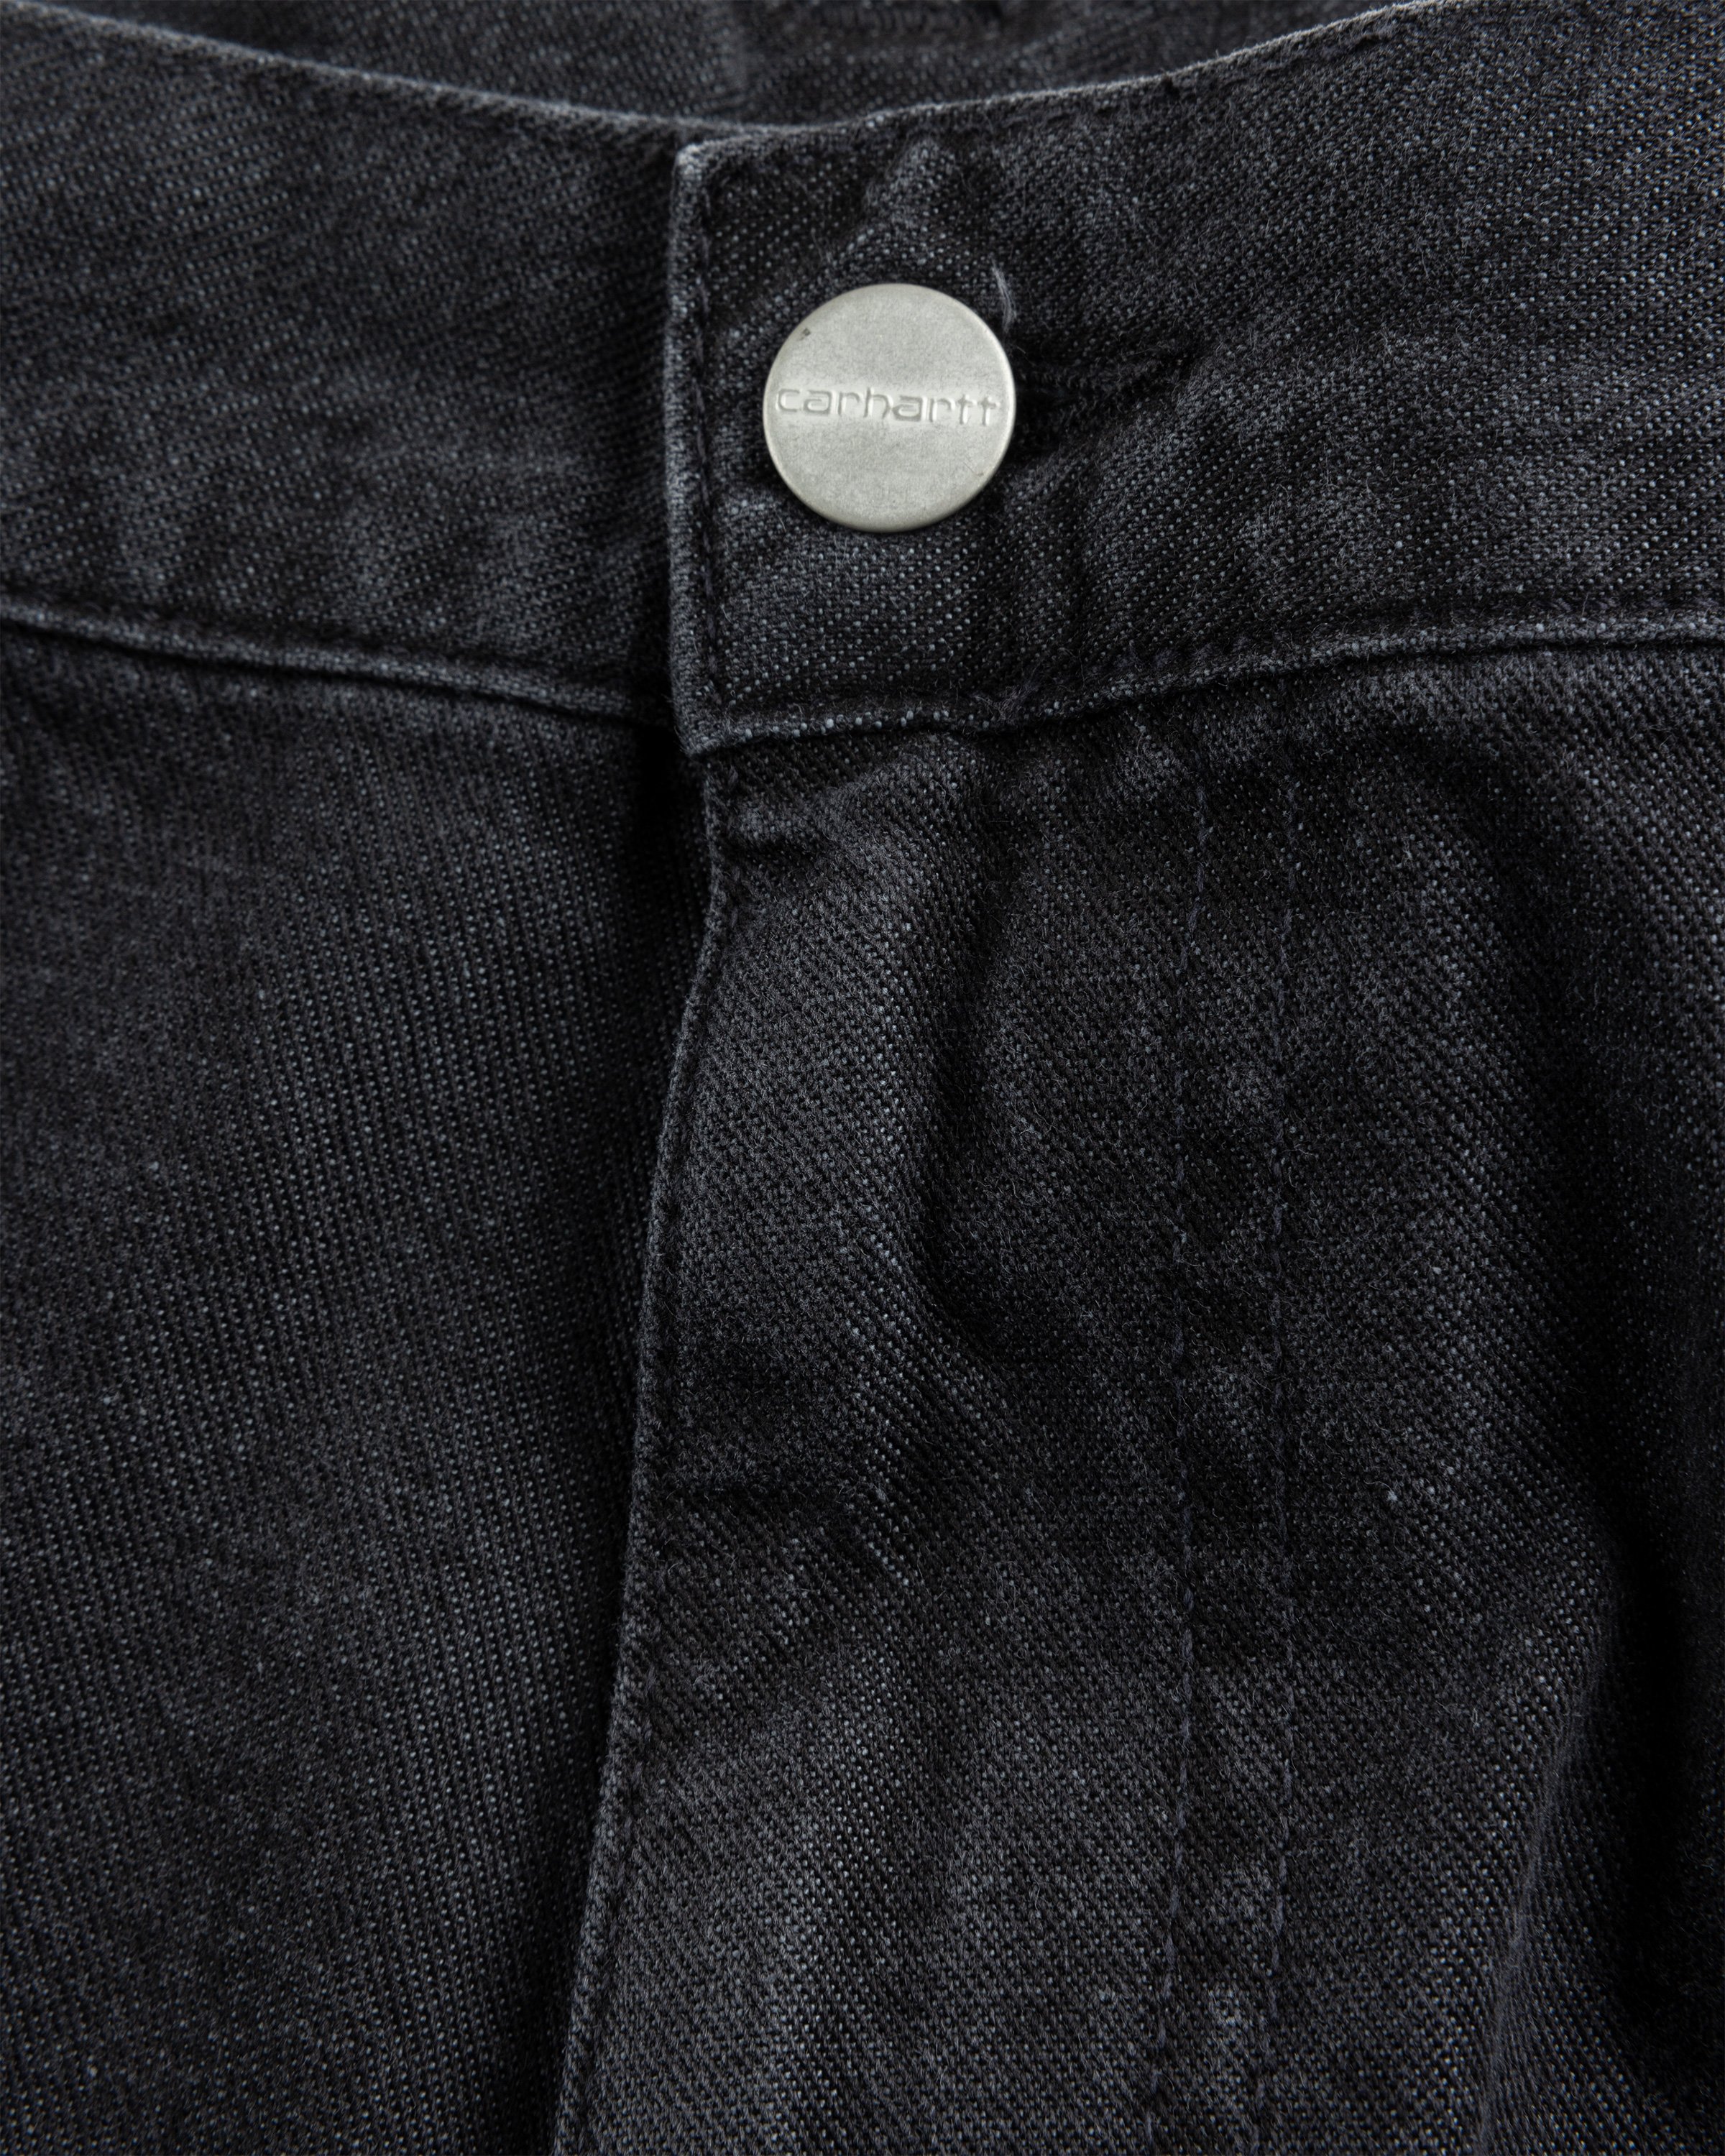 Carhartt WIP - OG Single Knee Pant Black /stone washed - Clothing - Black - Image 7